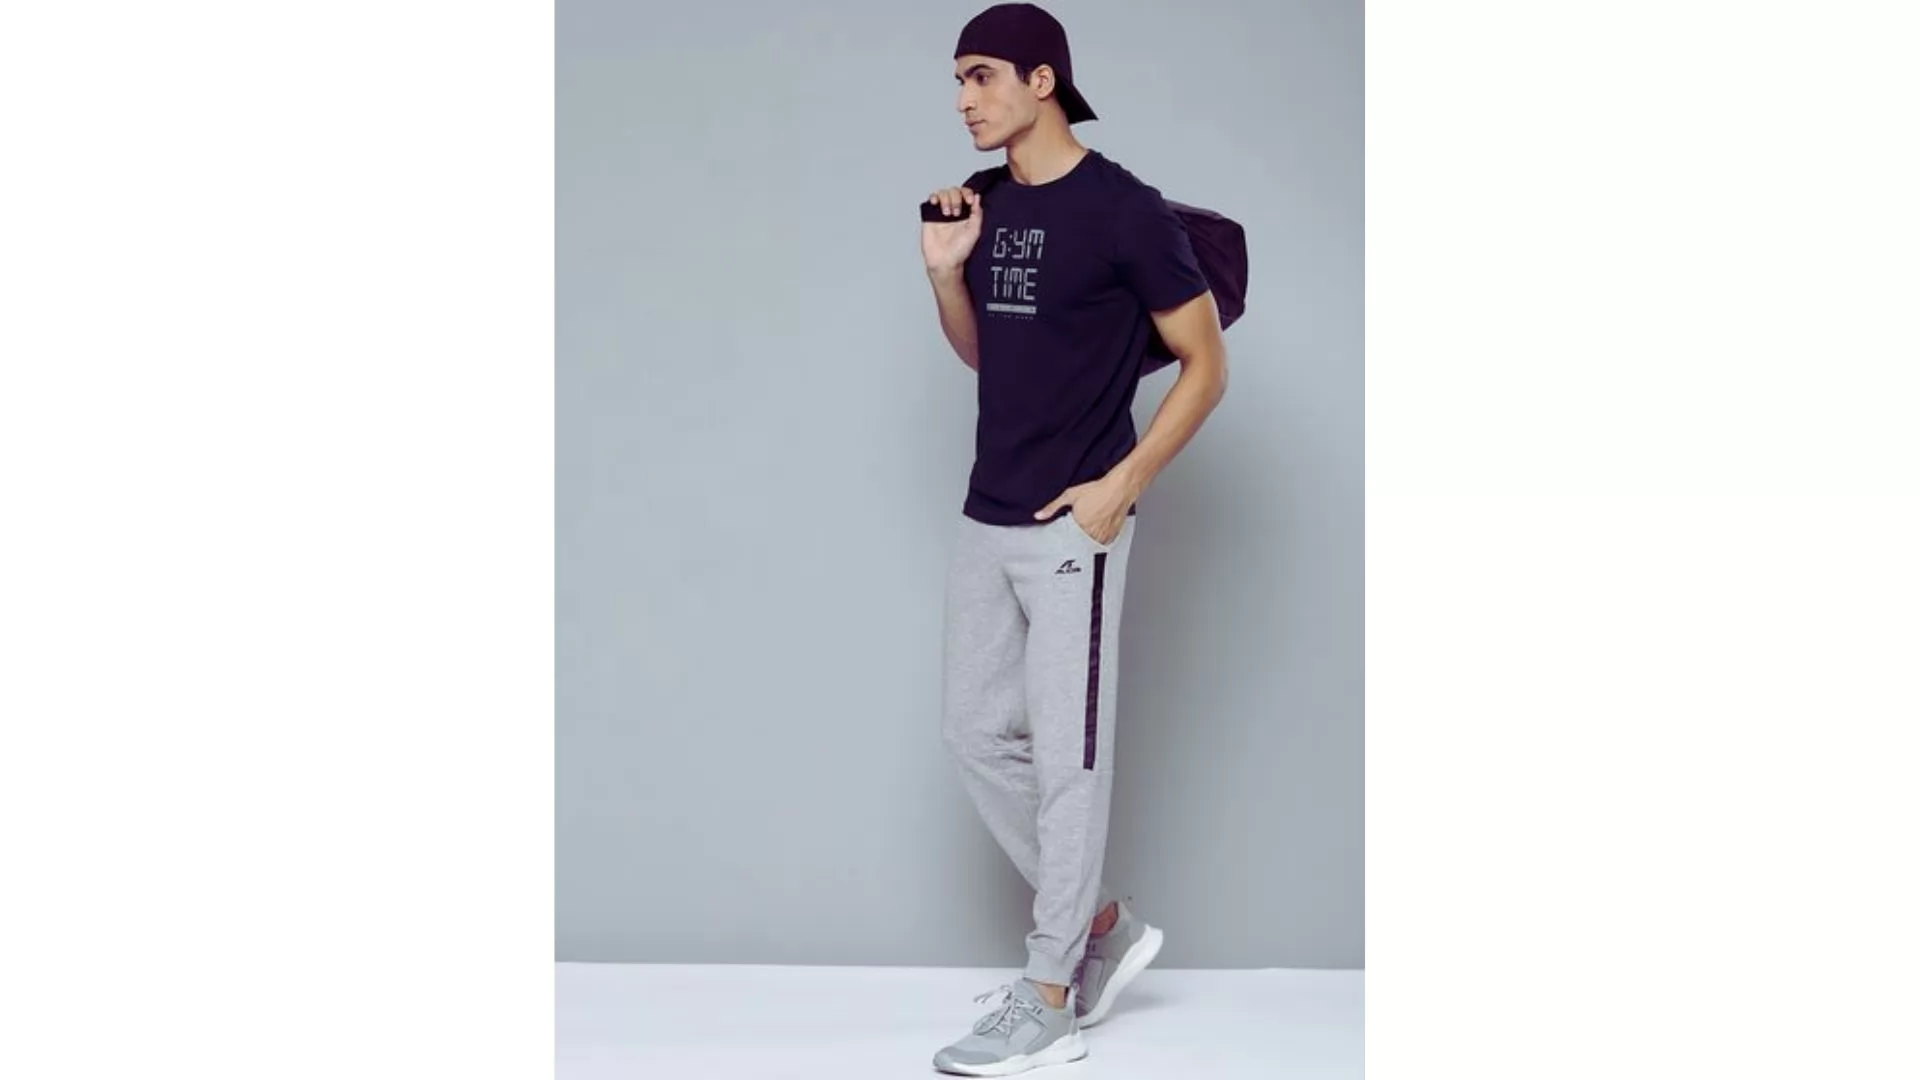 Adidas Men's E 3S T PNT SJ Regular Fit Pant Track